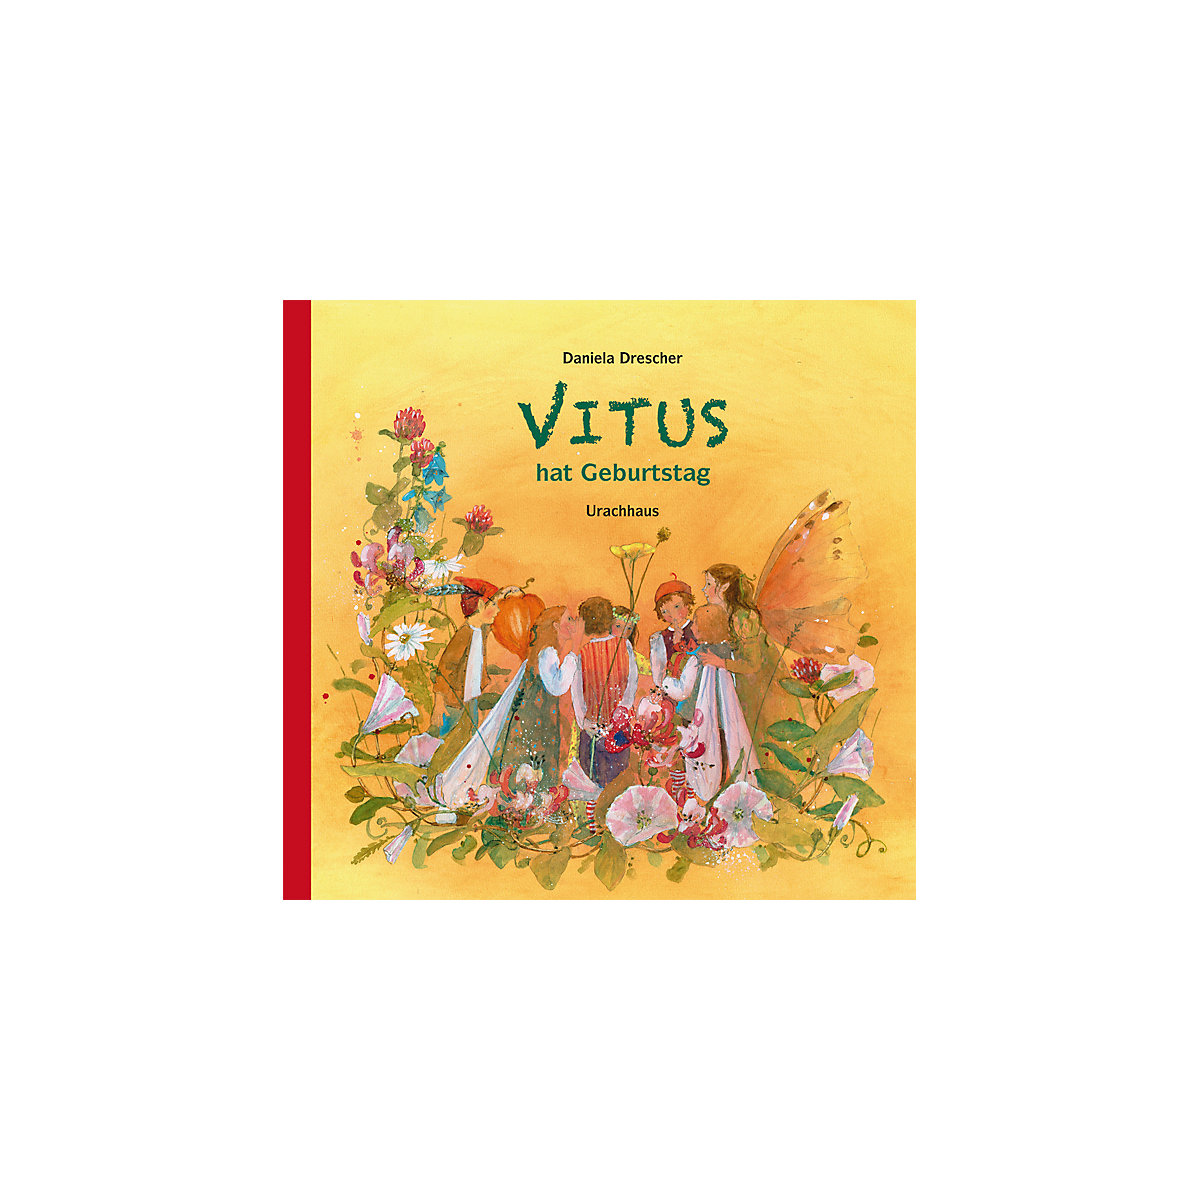 Vitus hat Geburtstag